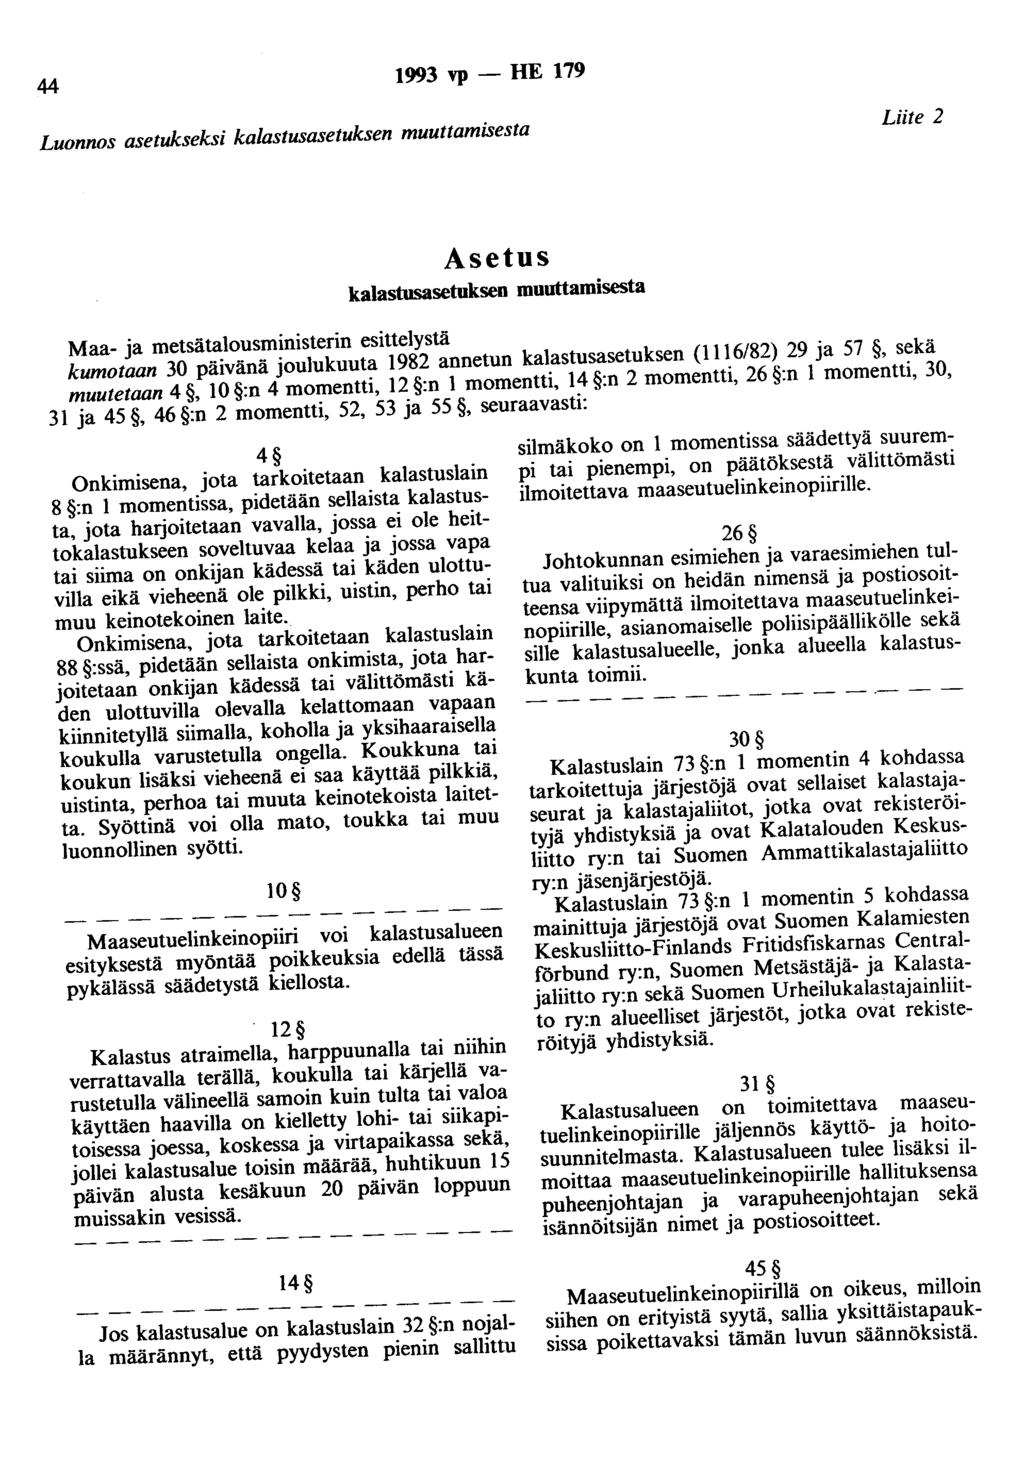 44 1993 vp - HE 179 Luonnos asetukseksi kalastusasetuksen muuttamisesta Liite 2 Asetus kalastusasetuksen muuttamisesta Maa- ja metsätalousministerin esittelystä kumotaan 30 päivänä joulukuuta 1982